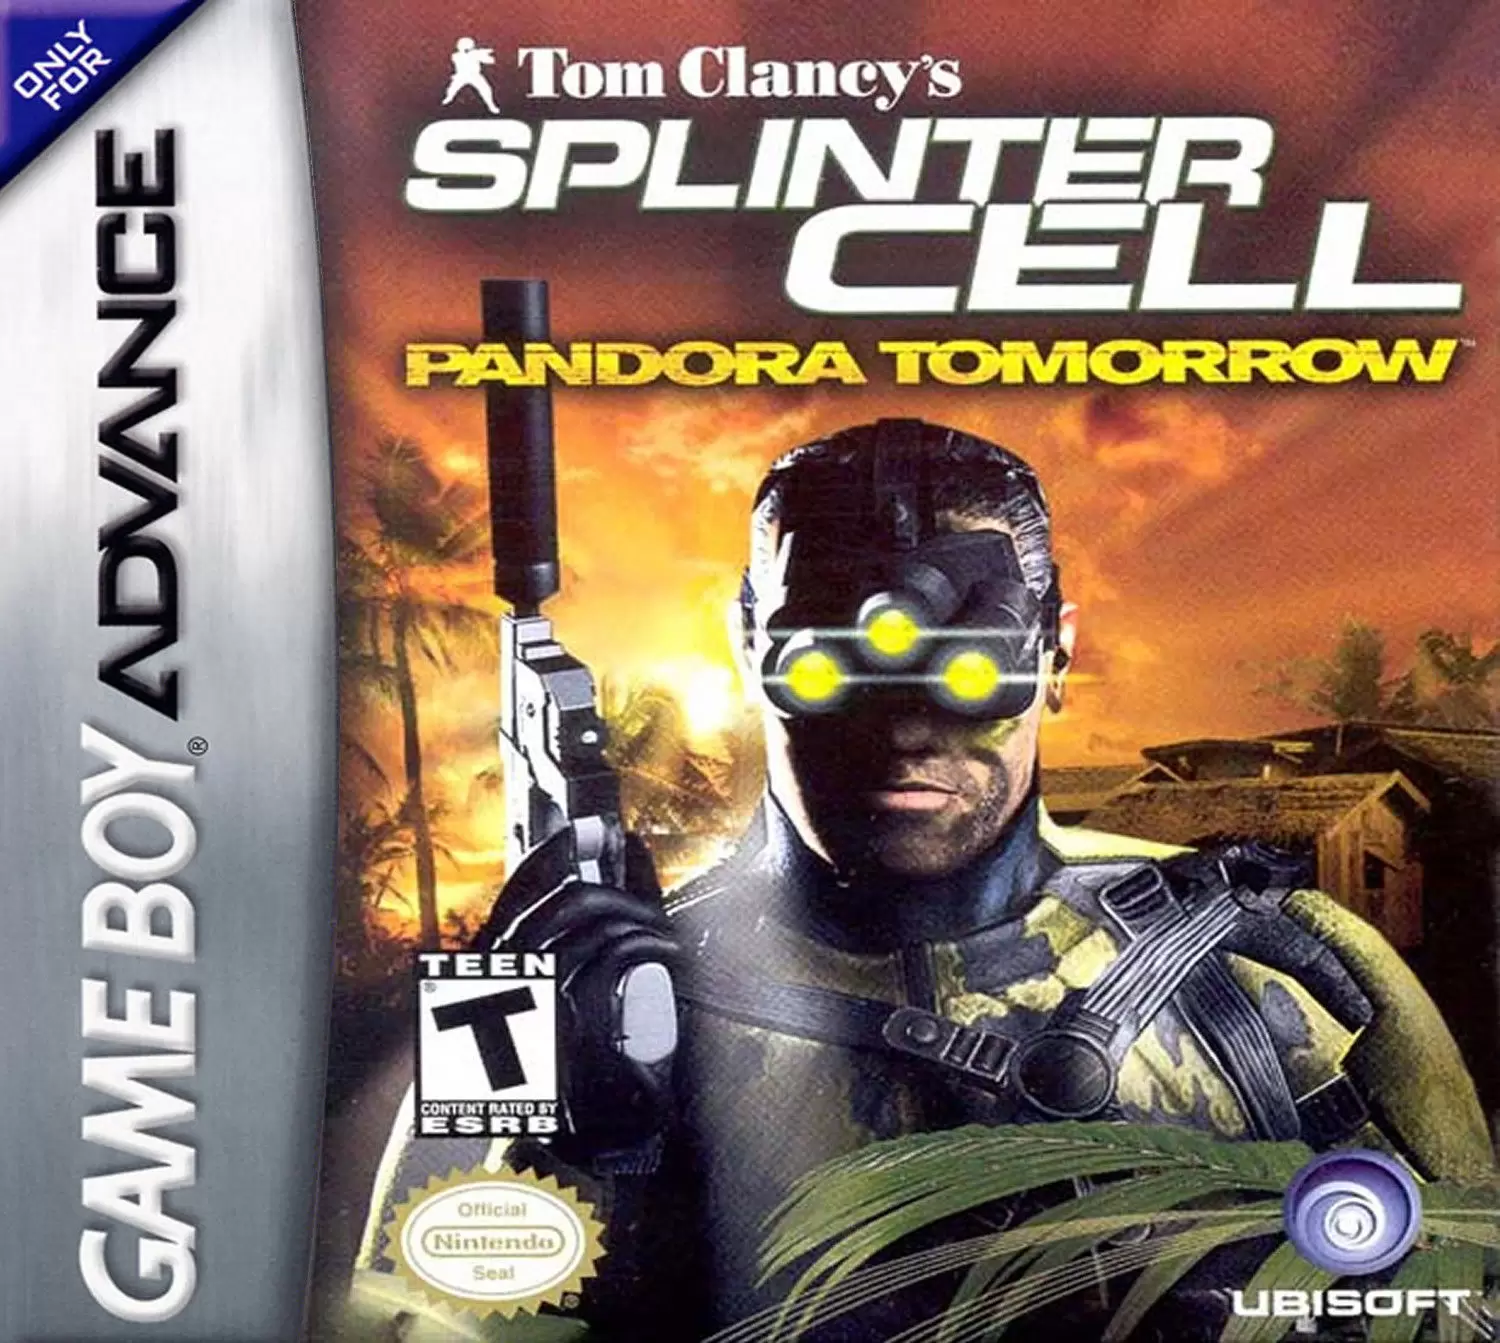 Splinter Cell: Pandora Tomorrow (2004)